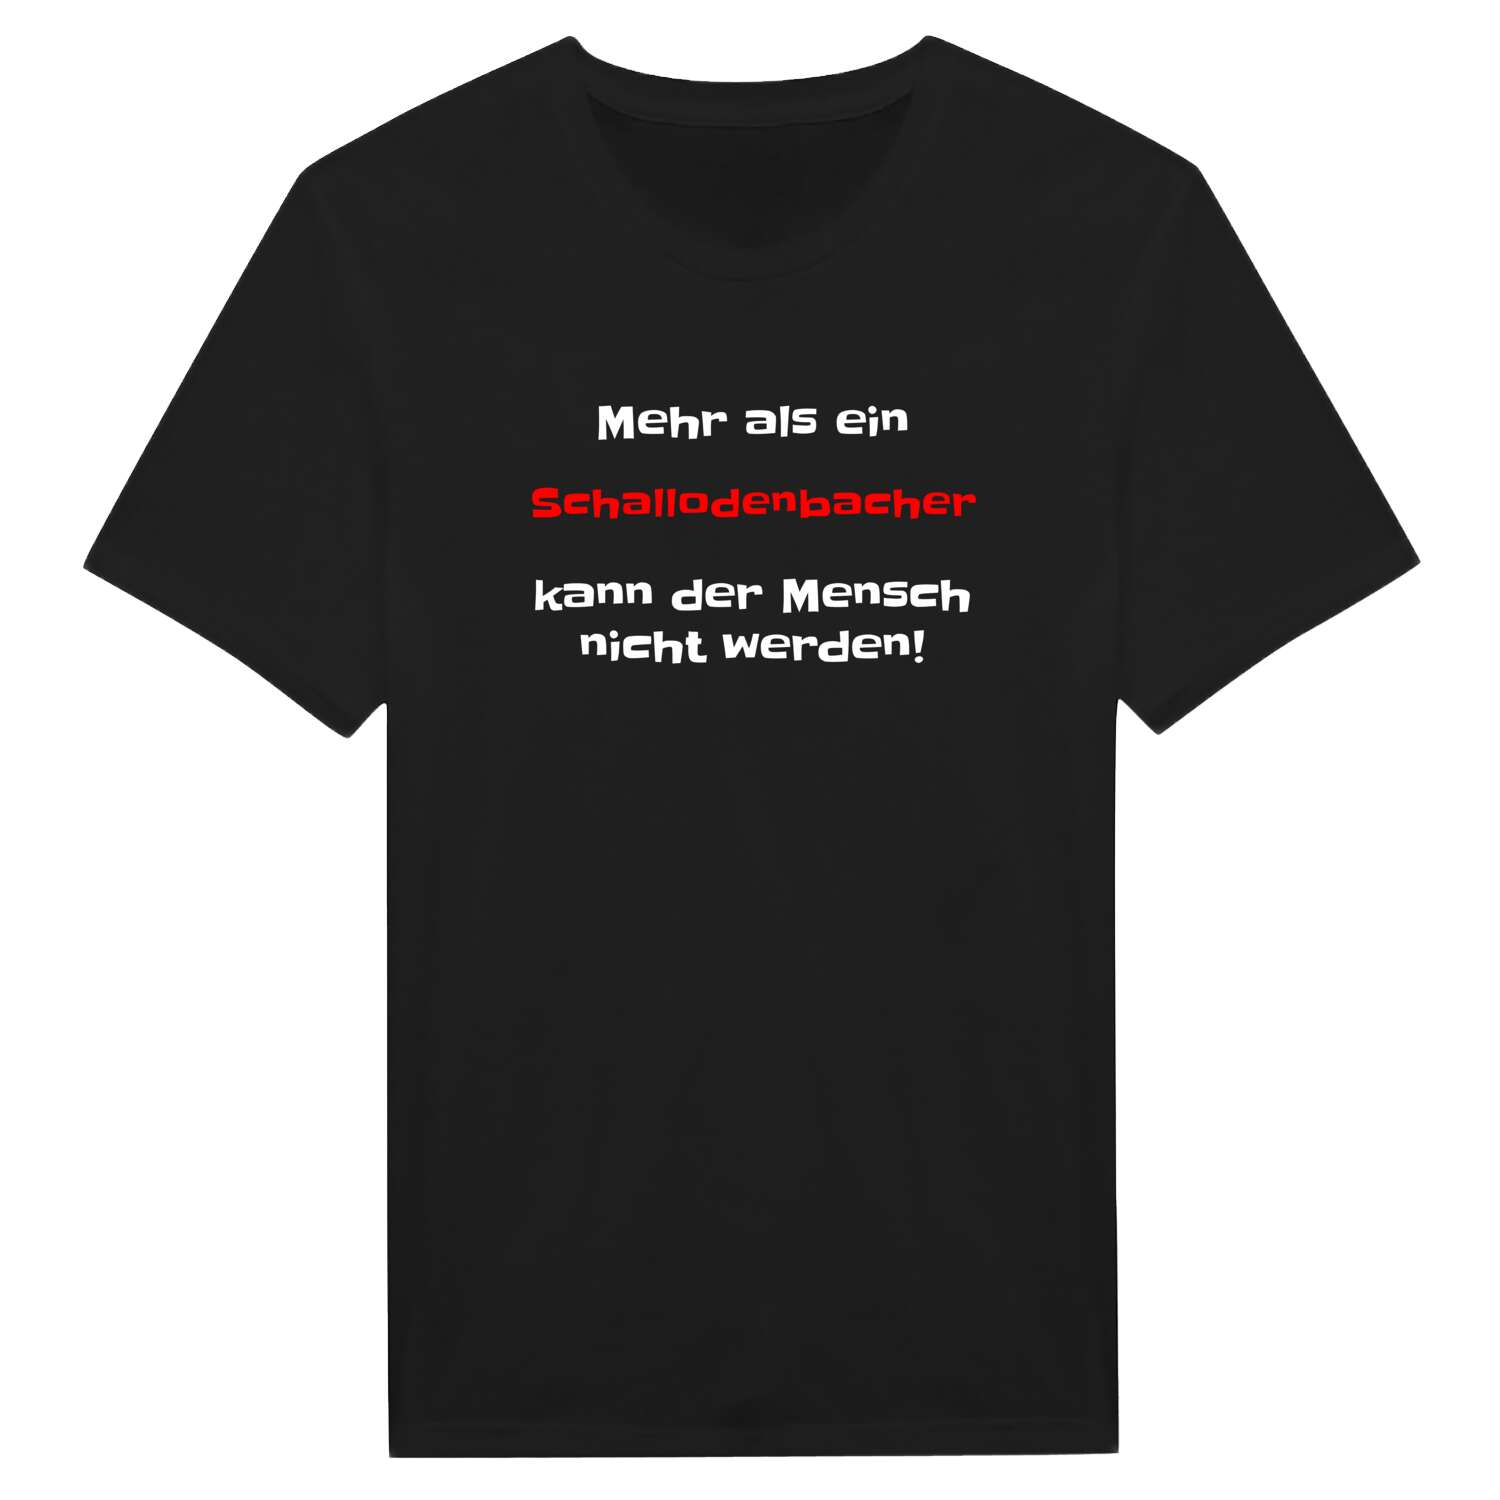 Schallodenbach T-Shirt »Mehr als ein«